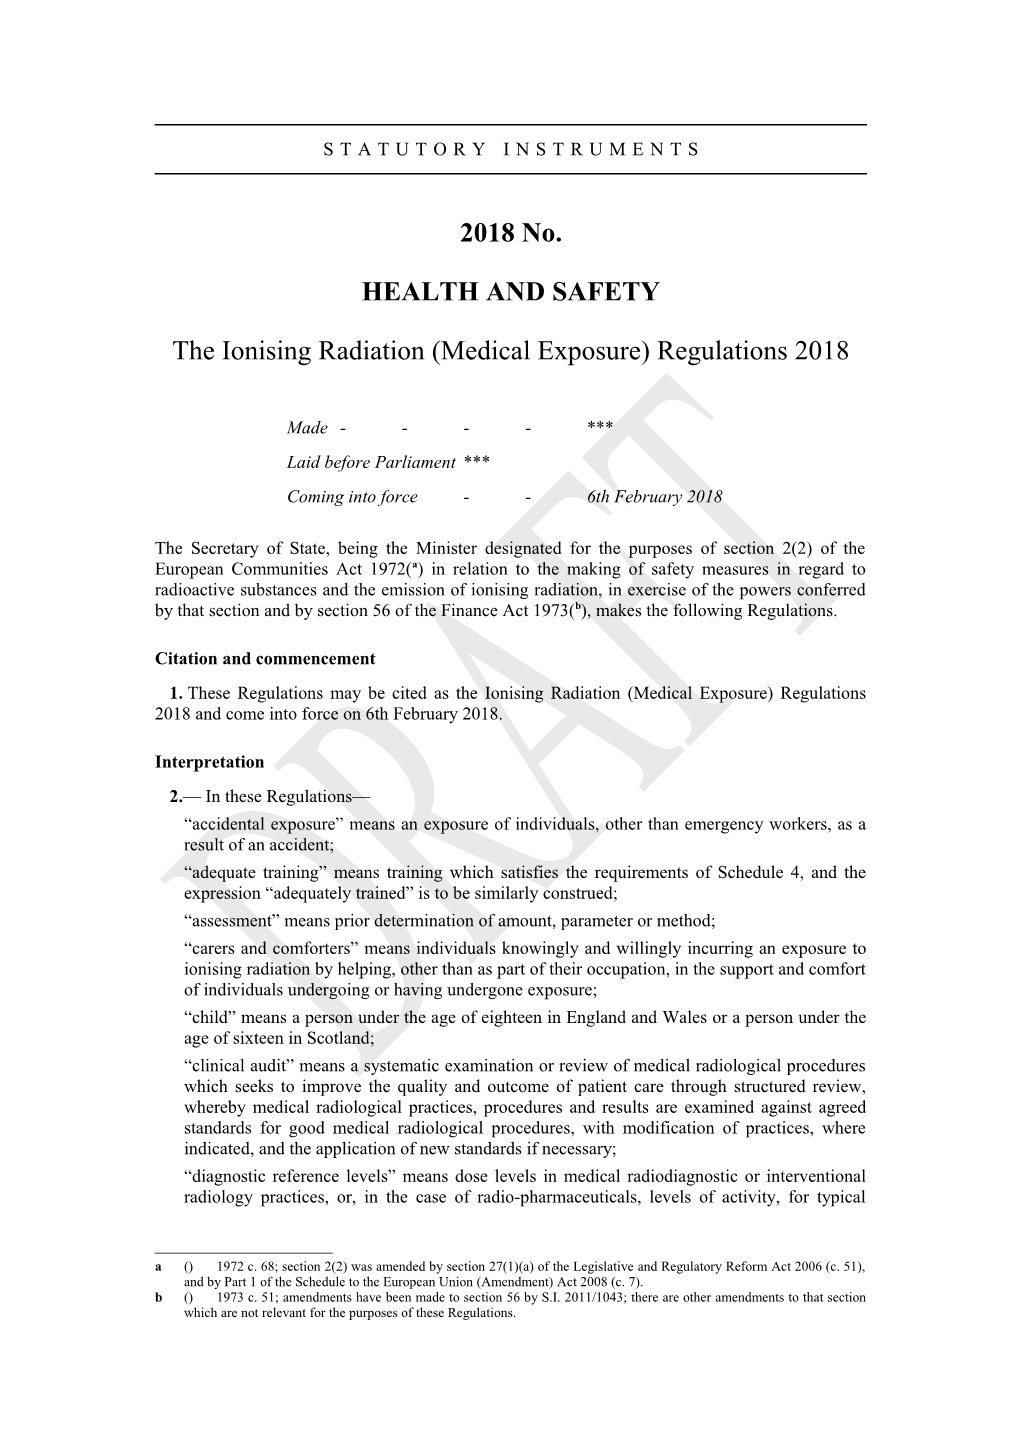 Theionisingradiation(Medicalexposure)Regulations2018